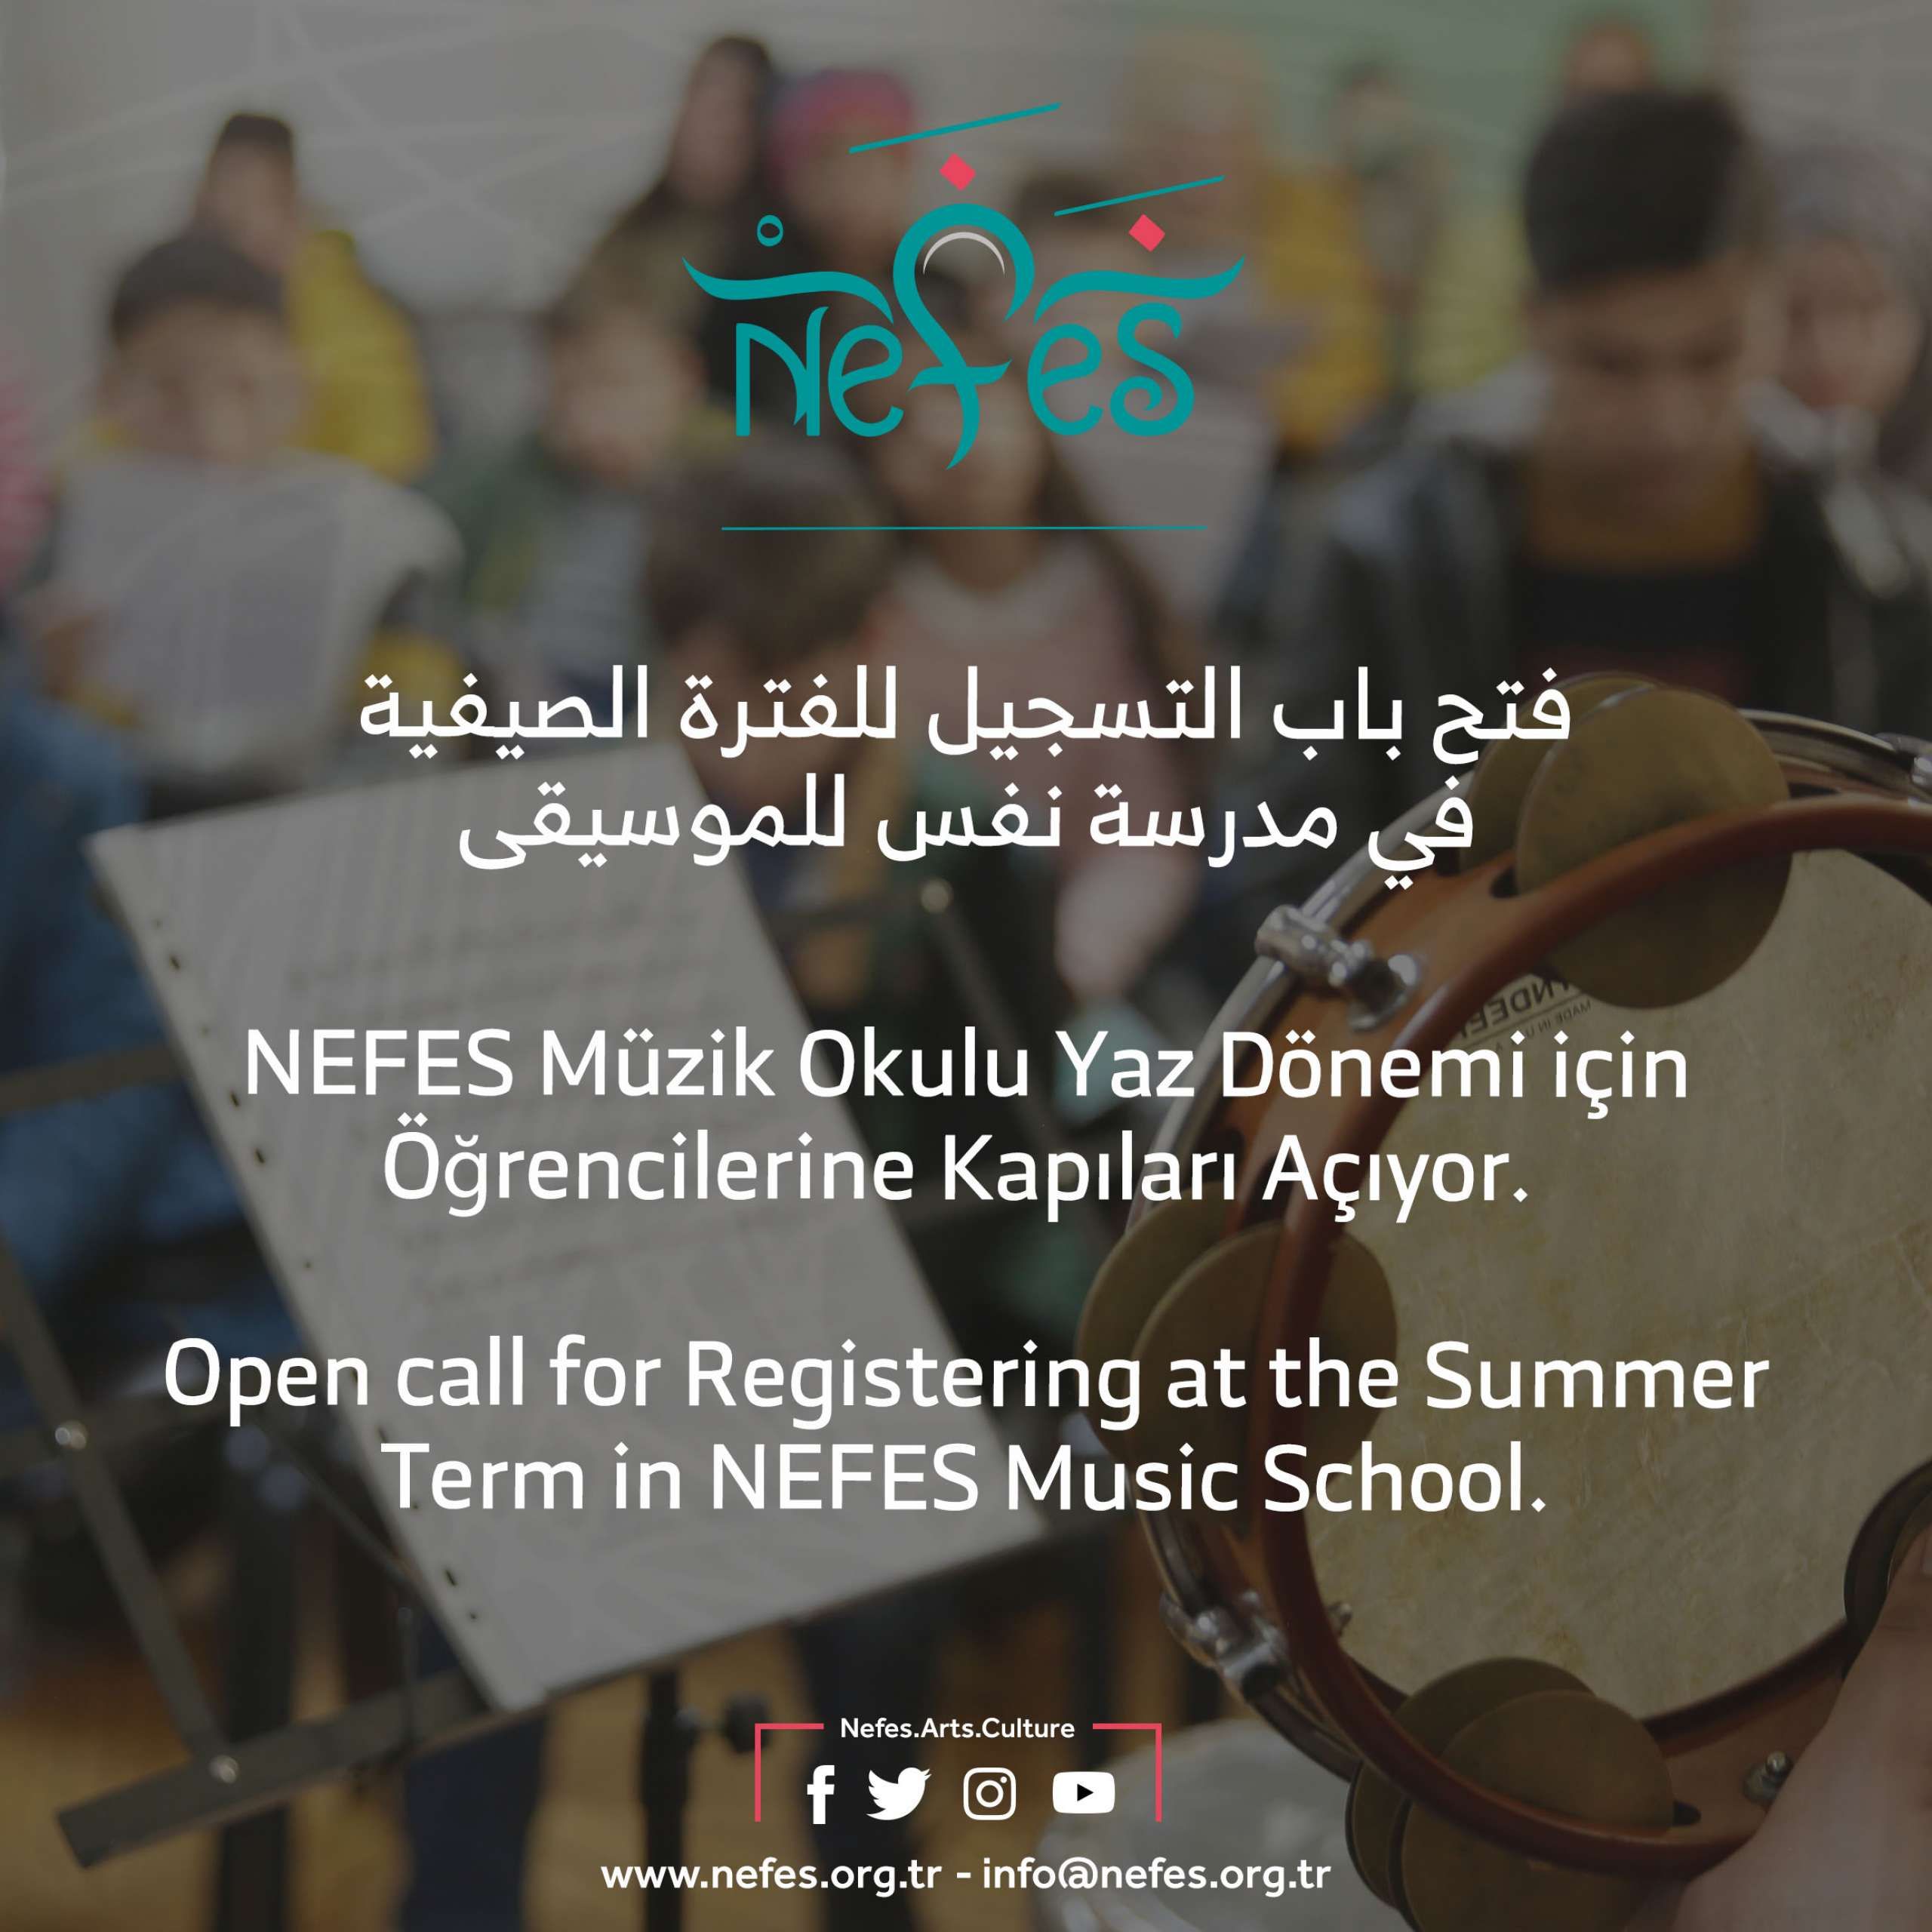 NEFES Müzik Okulu Yaz Dönemi için Öğrencilerine Kapıları Açıyor